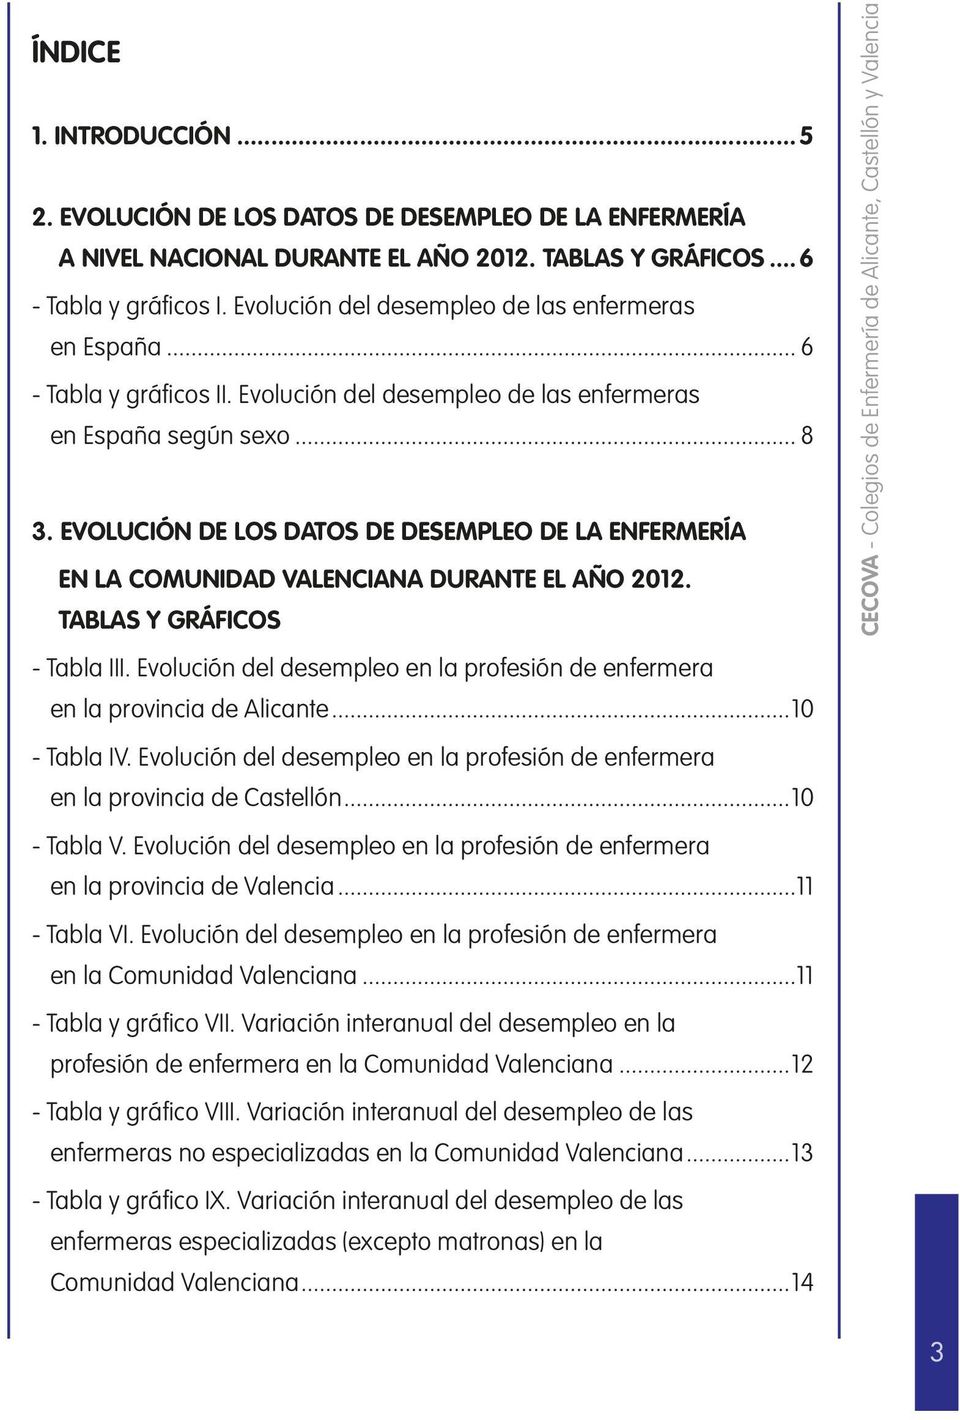 EVOLUCIÓN DE LOS DATOS DE DESEMPLEO DE LA ENFERMERÍA EN LA COMUNIDAD VALENCIANA DURANTE EL AÑO 2012. TABLAS Y GRÁFICOS - Tabla III.